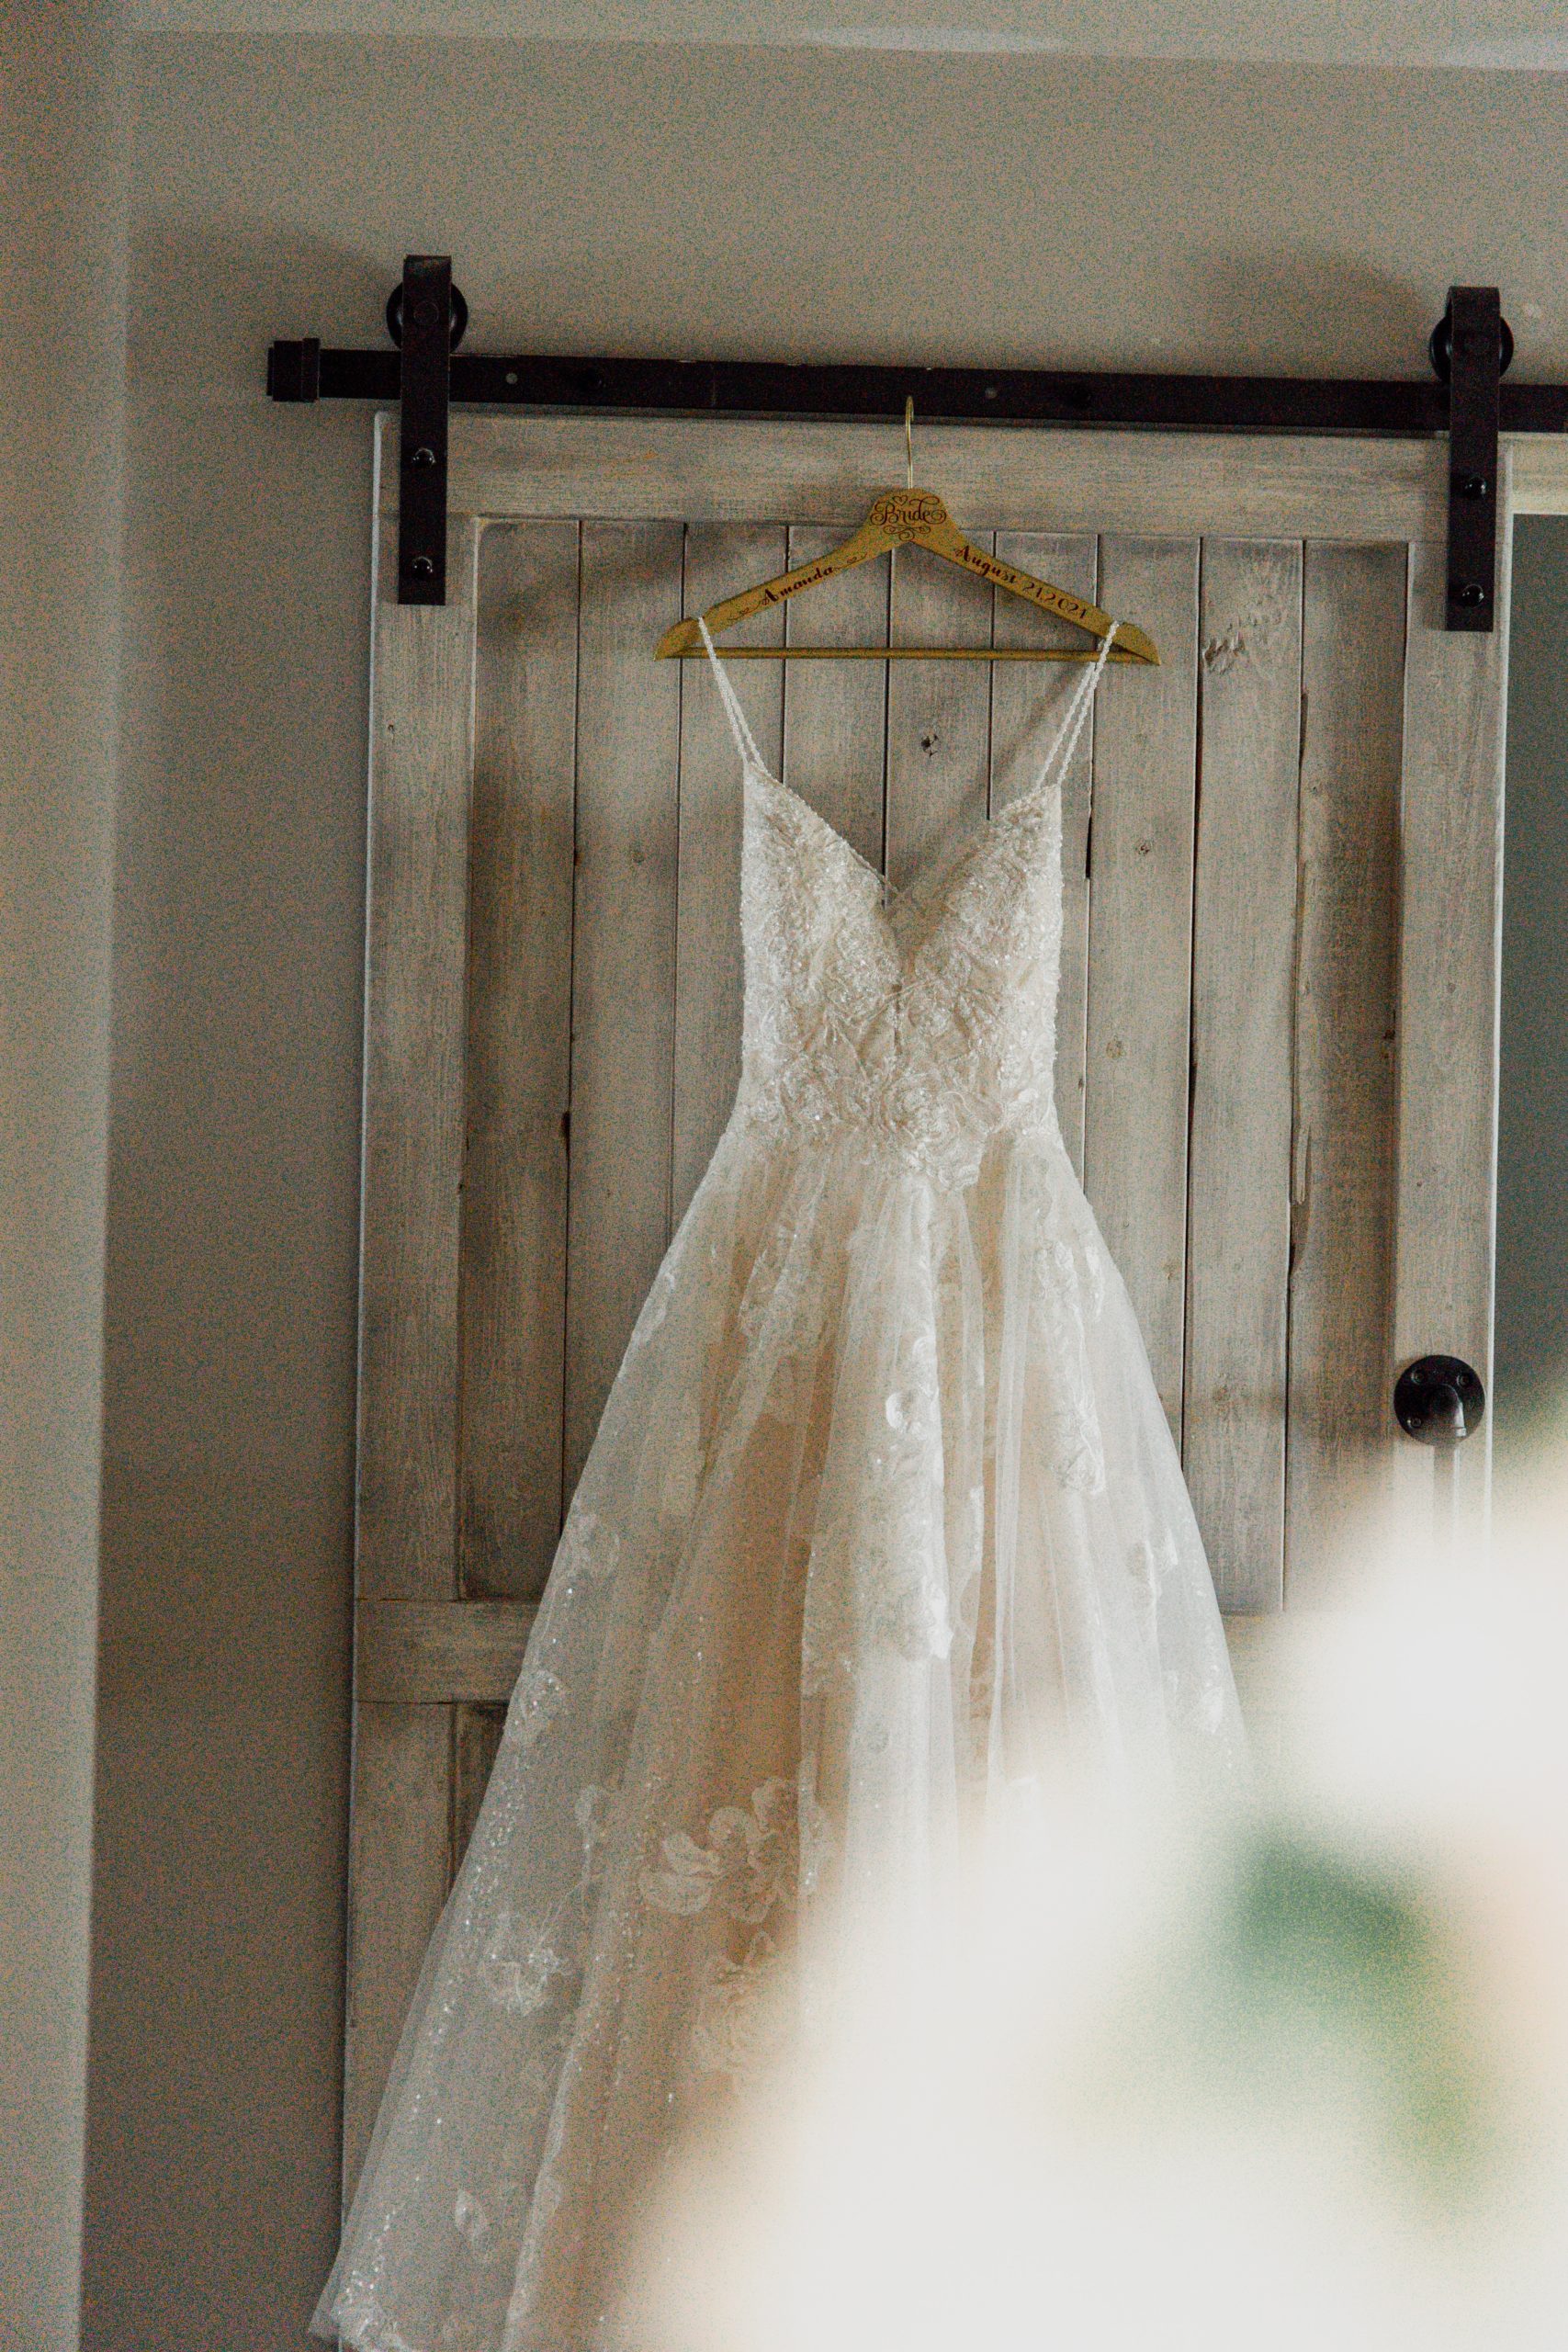 An A-line, lace wedding dress hangs off of a door.